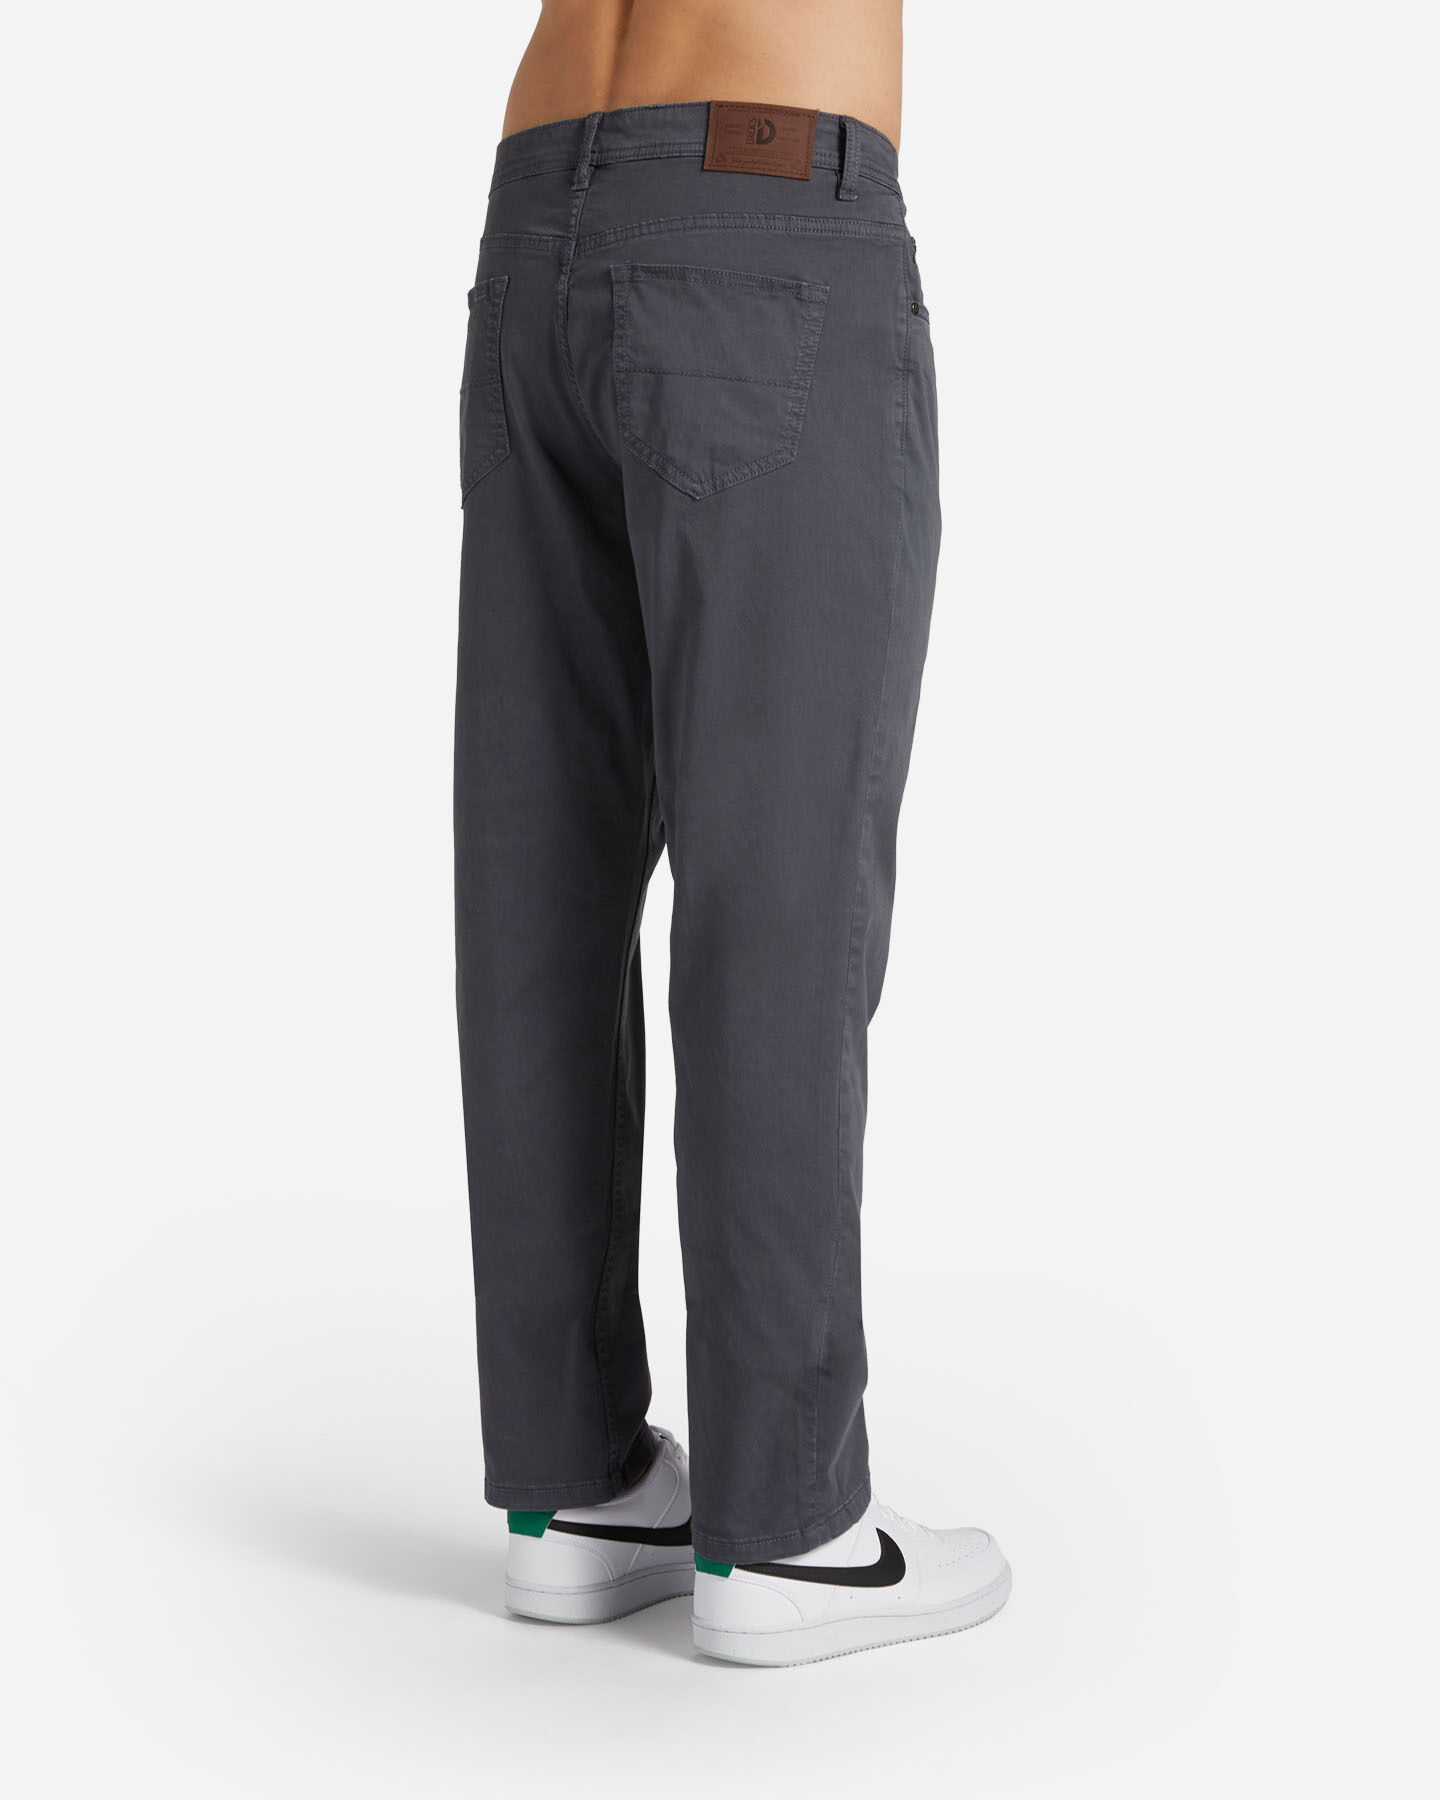  Pantalone DACK'S ESSENTIAL M S4129748|910|44 scatto 1